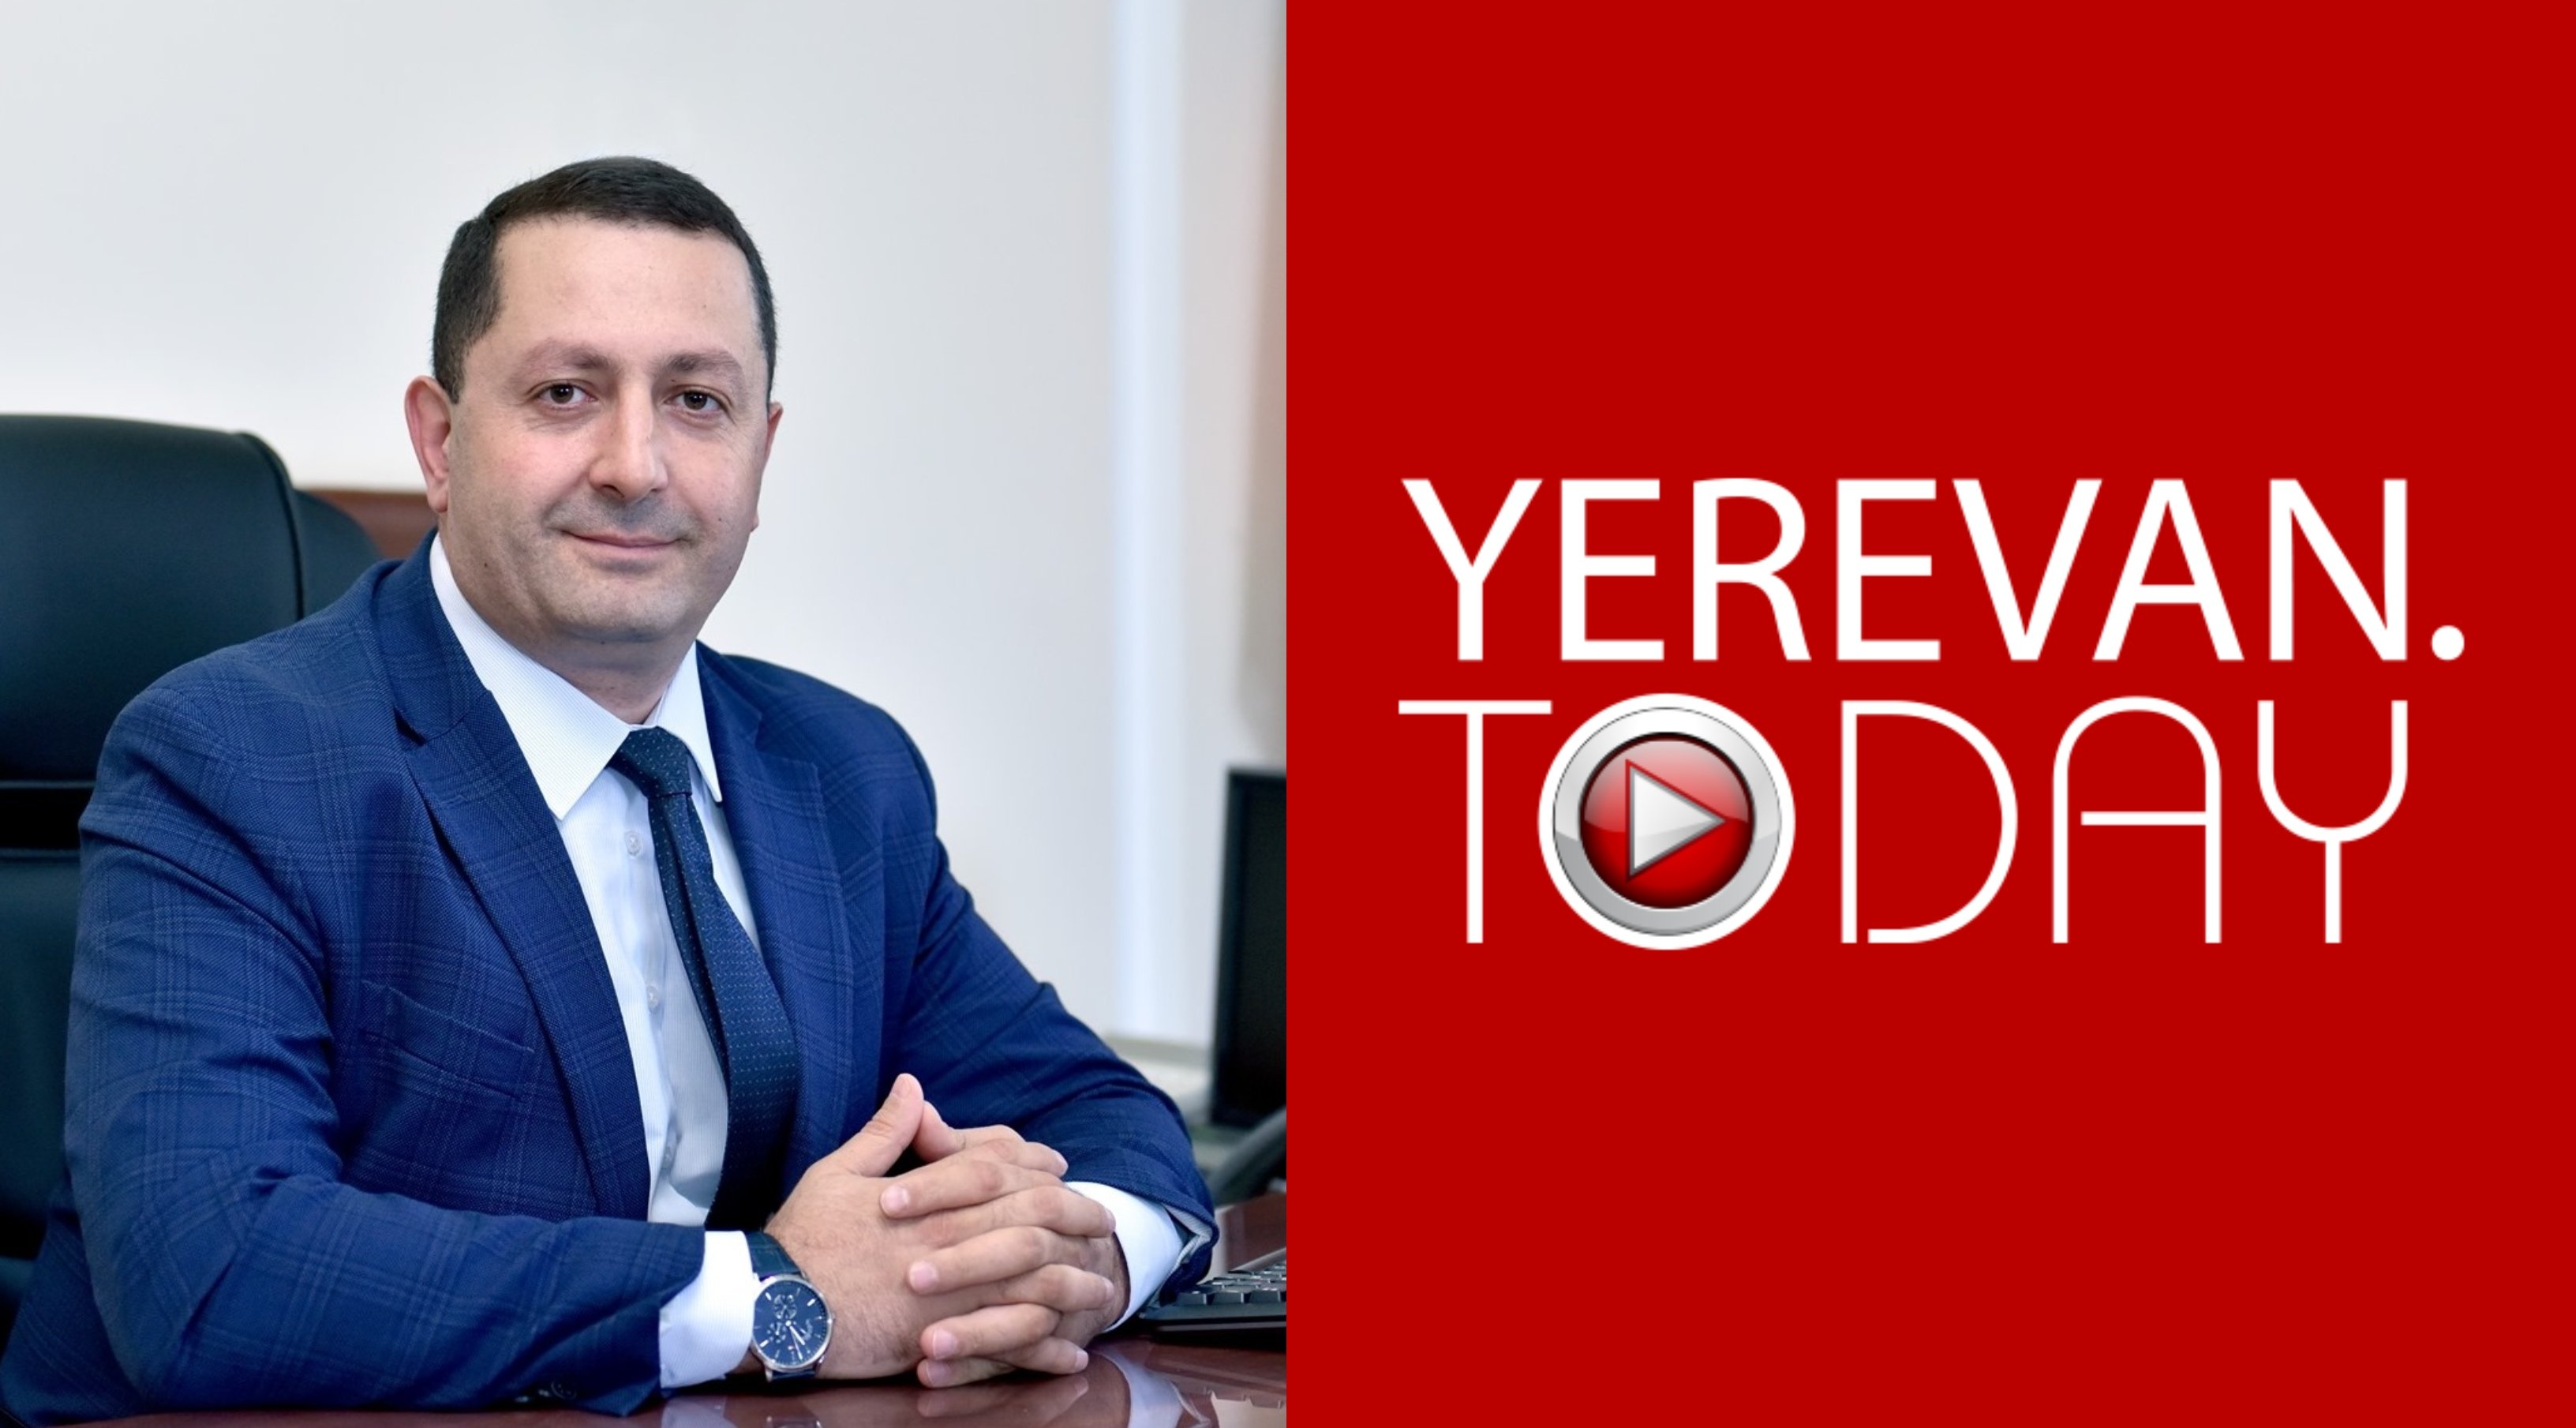 Վերաքննիչ դատարանը պարտավորեցրել է Yerevan today կայքին և դրա սեփականատեր «Մեդիա Պլյուս»-ին՝ հերքել ԵՊՀ ռեկտորի մասին զրպարտությունը և 564 հազար դրամ փոխհատուցում վճարել